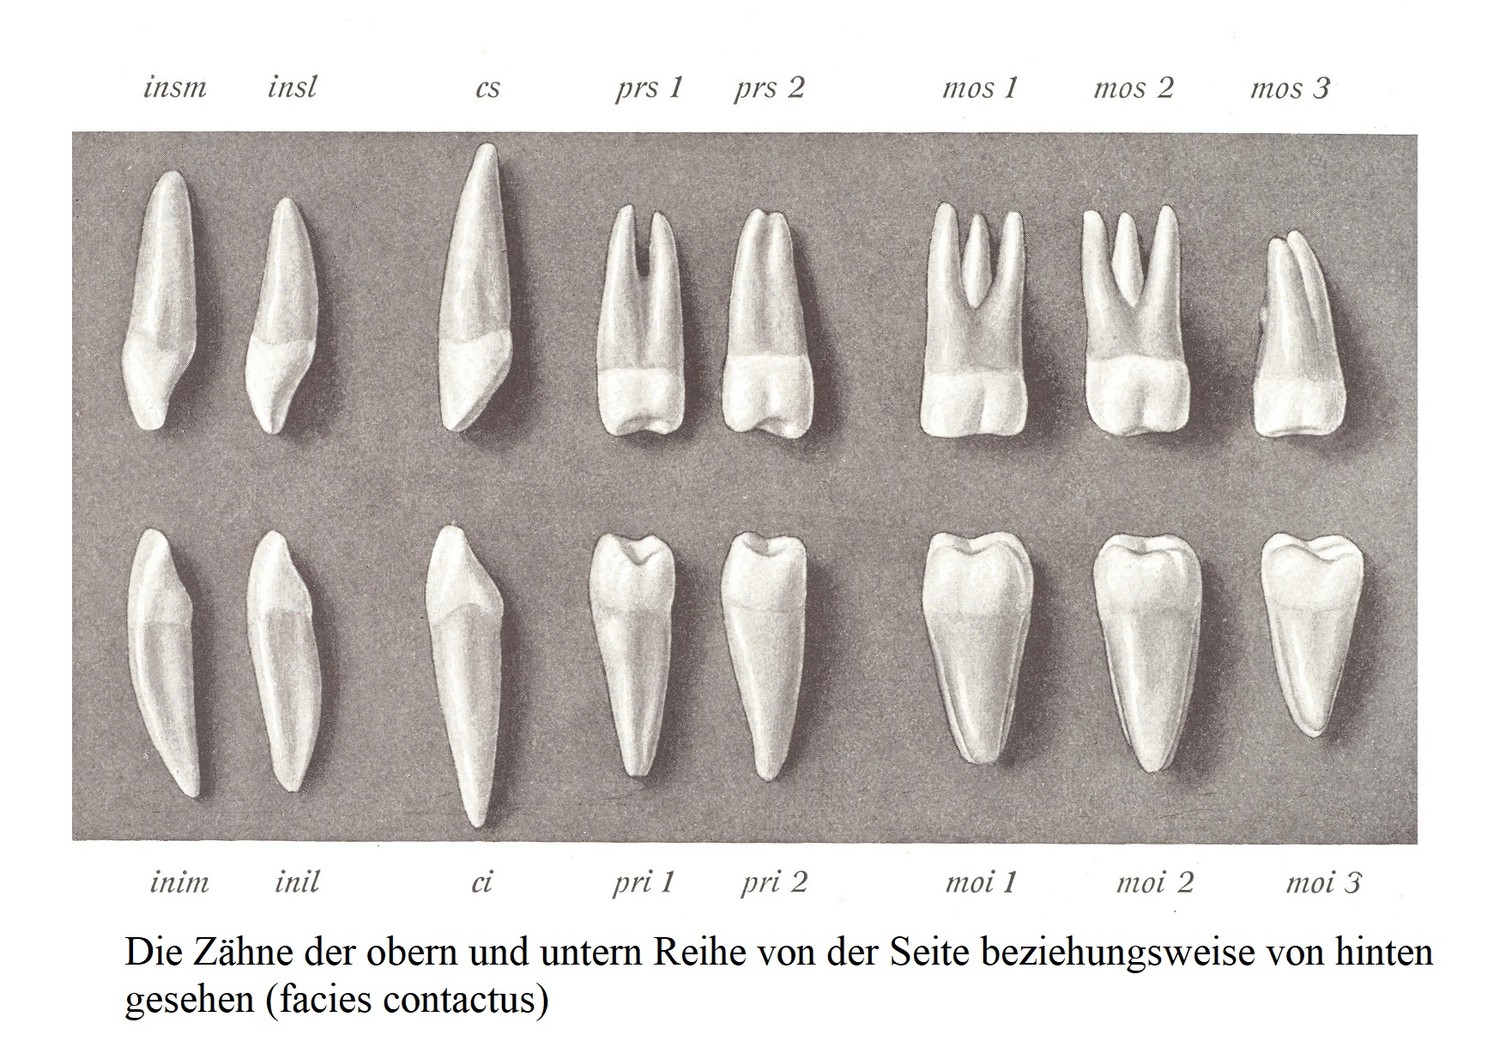 Зубы верхнего и нижнего рядов при осмотре соответственно сбоку и сзади (facies contactus).